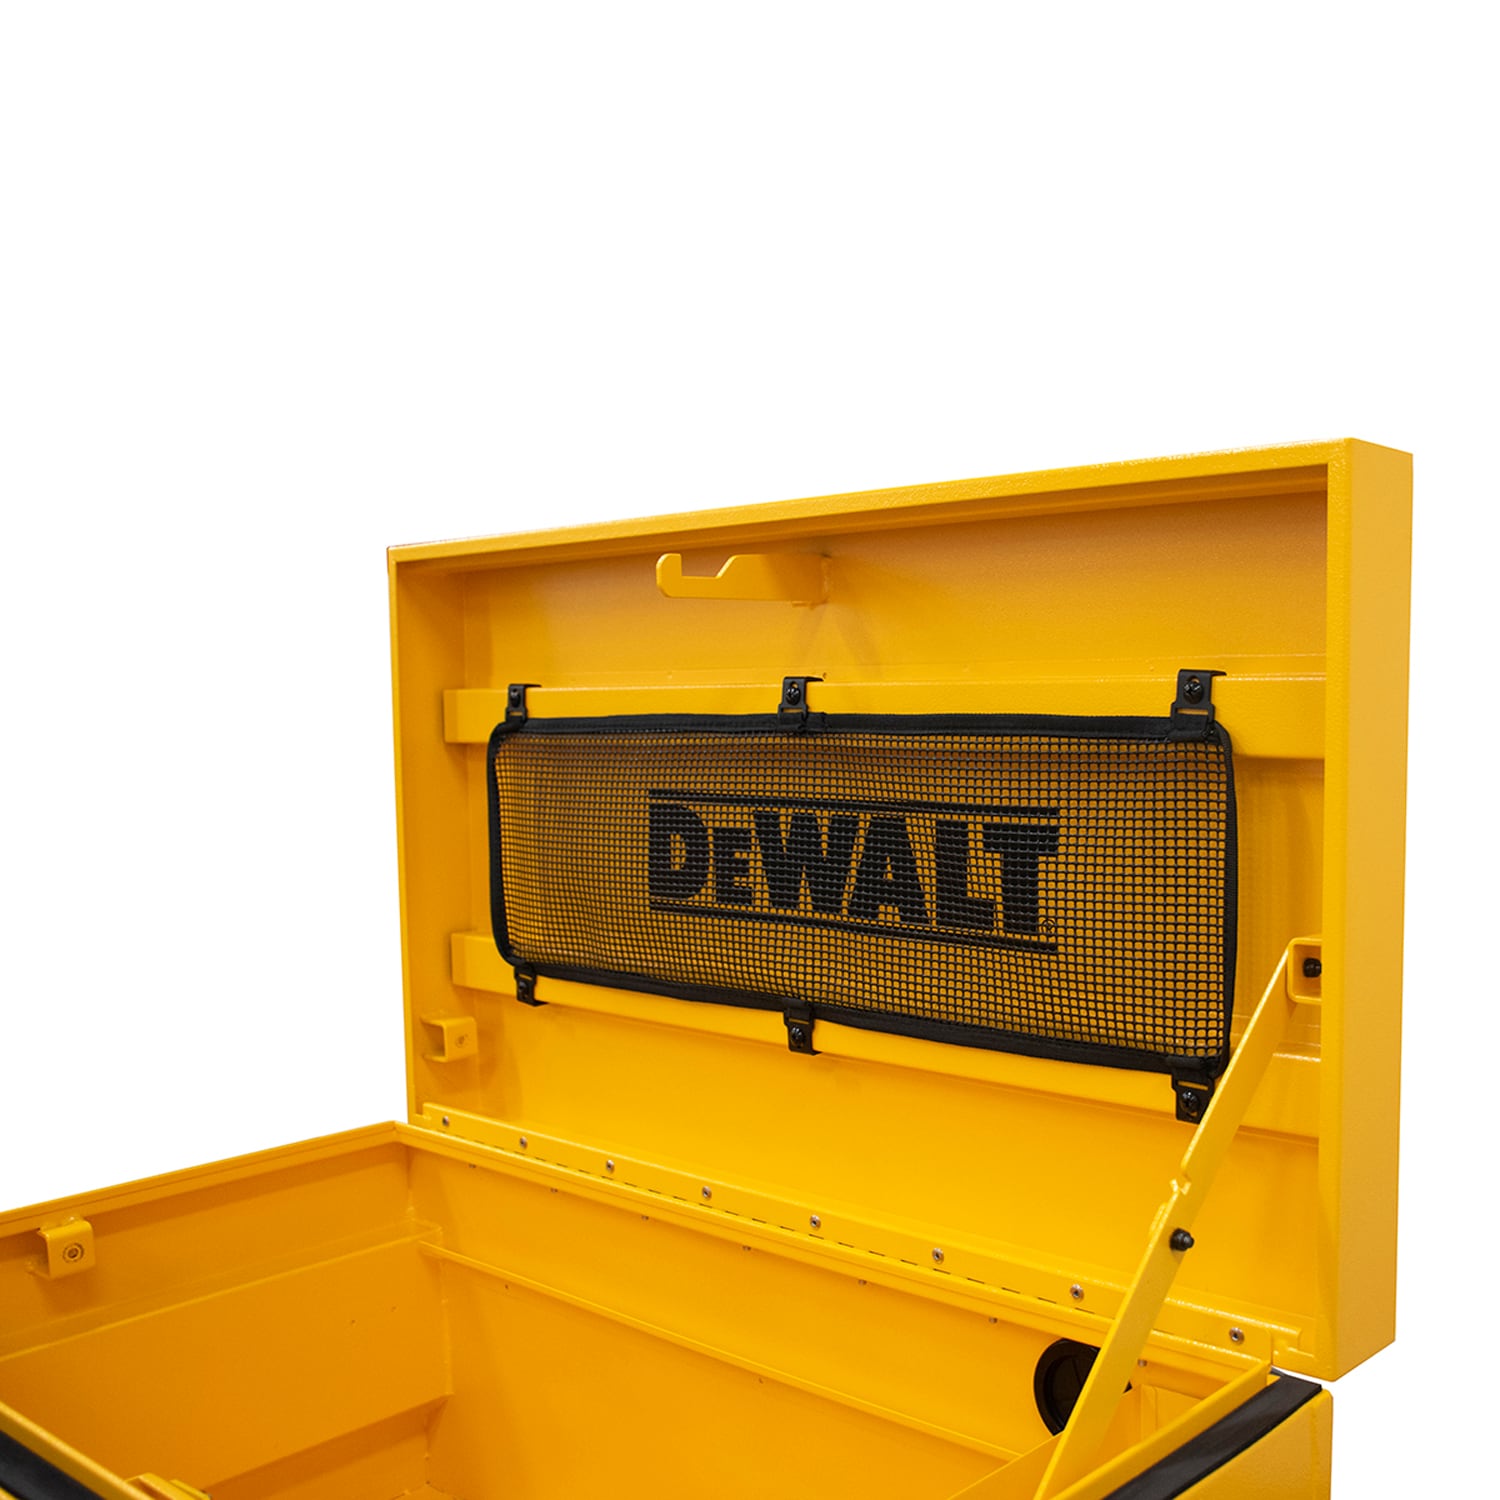 Dewalt 32 In W X 18 In L X 18 5 In H Yellow Steel Jobsite Box In The